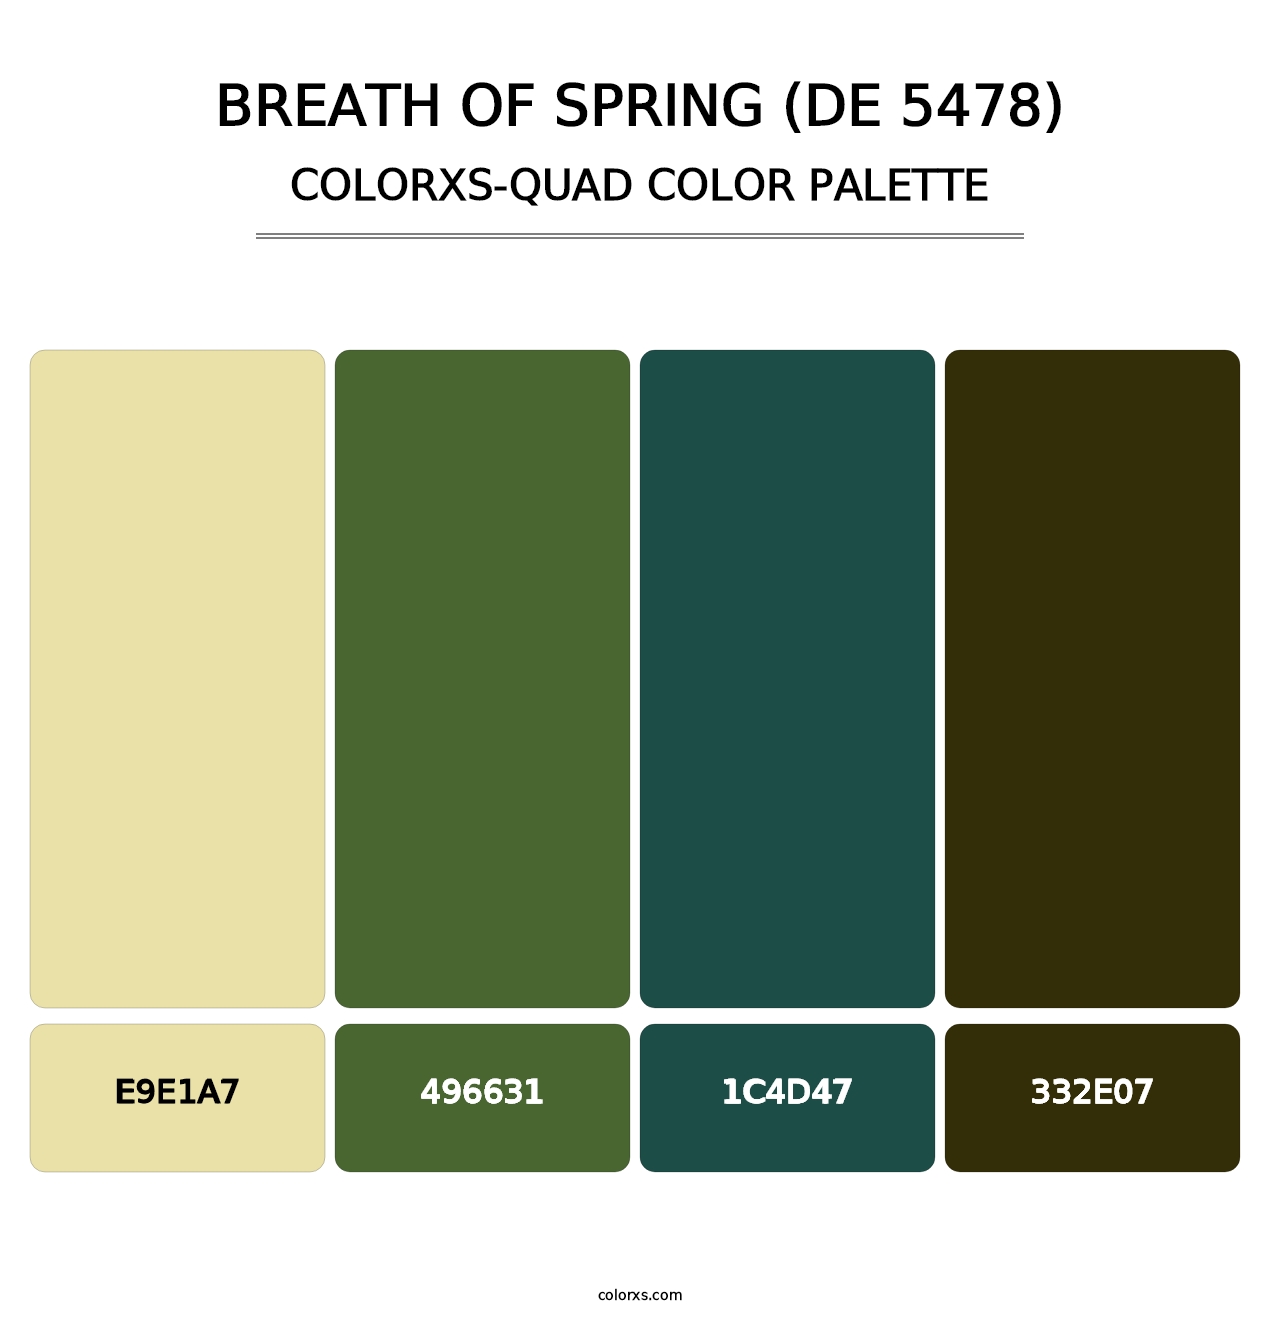 Breath of Spring (DE 5478) - Colorxs Quad Palette